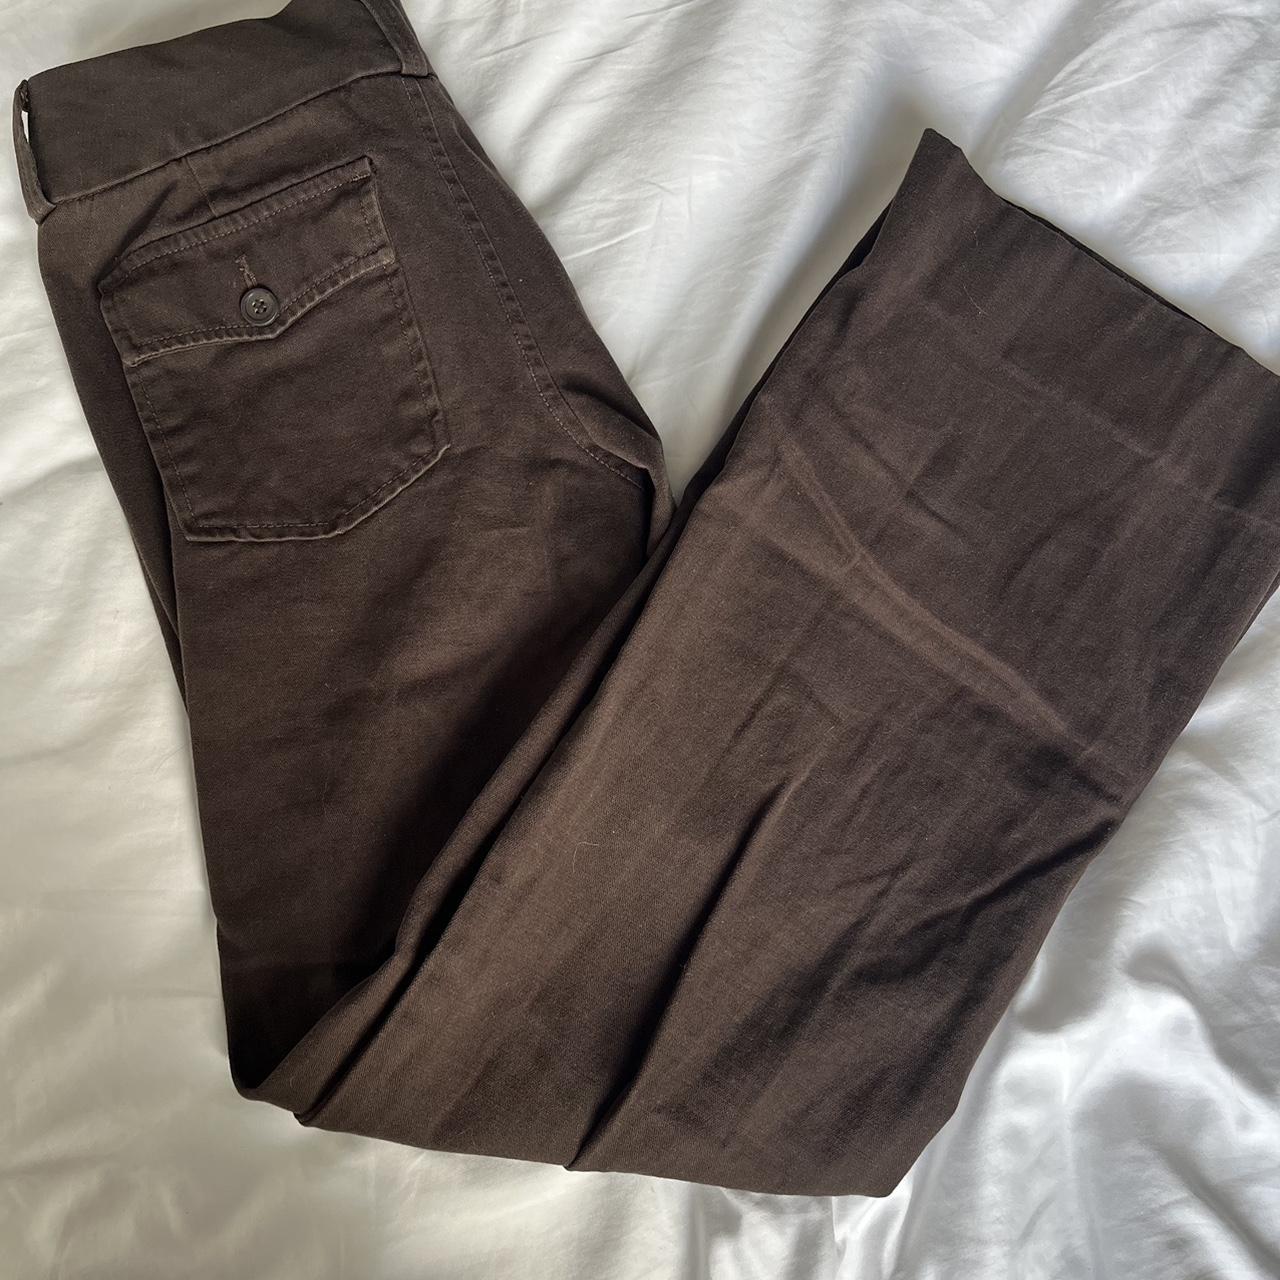 Vera wang vintage brown flared pants. Very comfy, - Depop